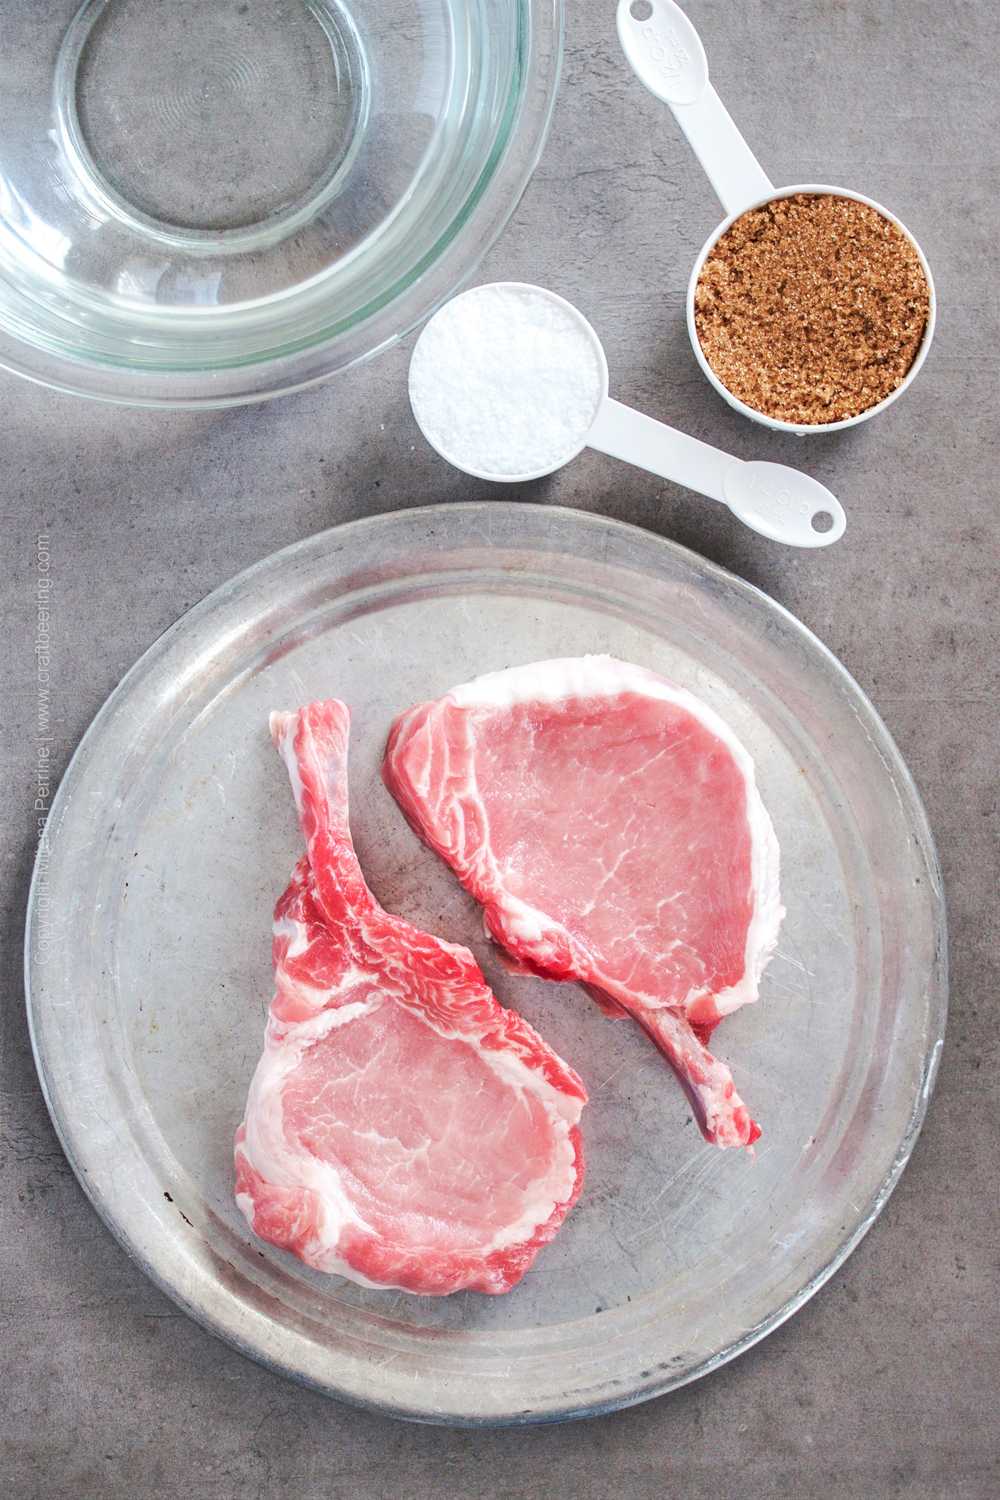 Thick pork chops and simple brine ingredients